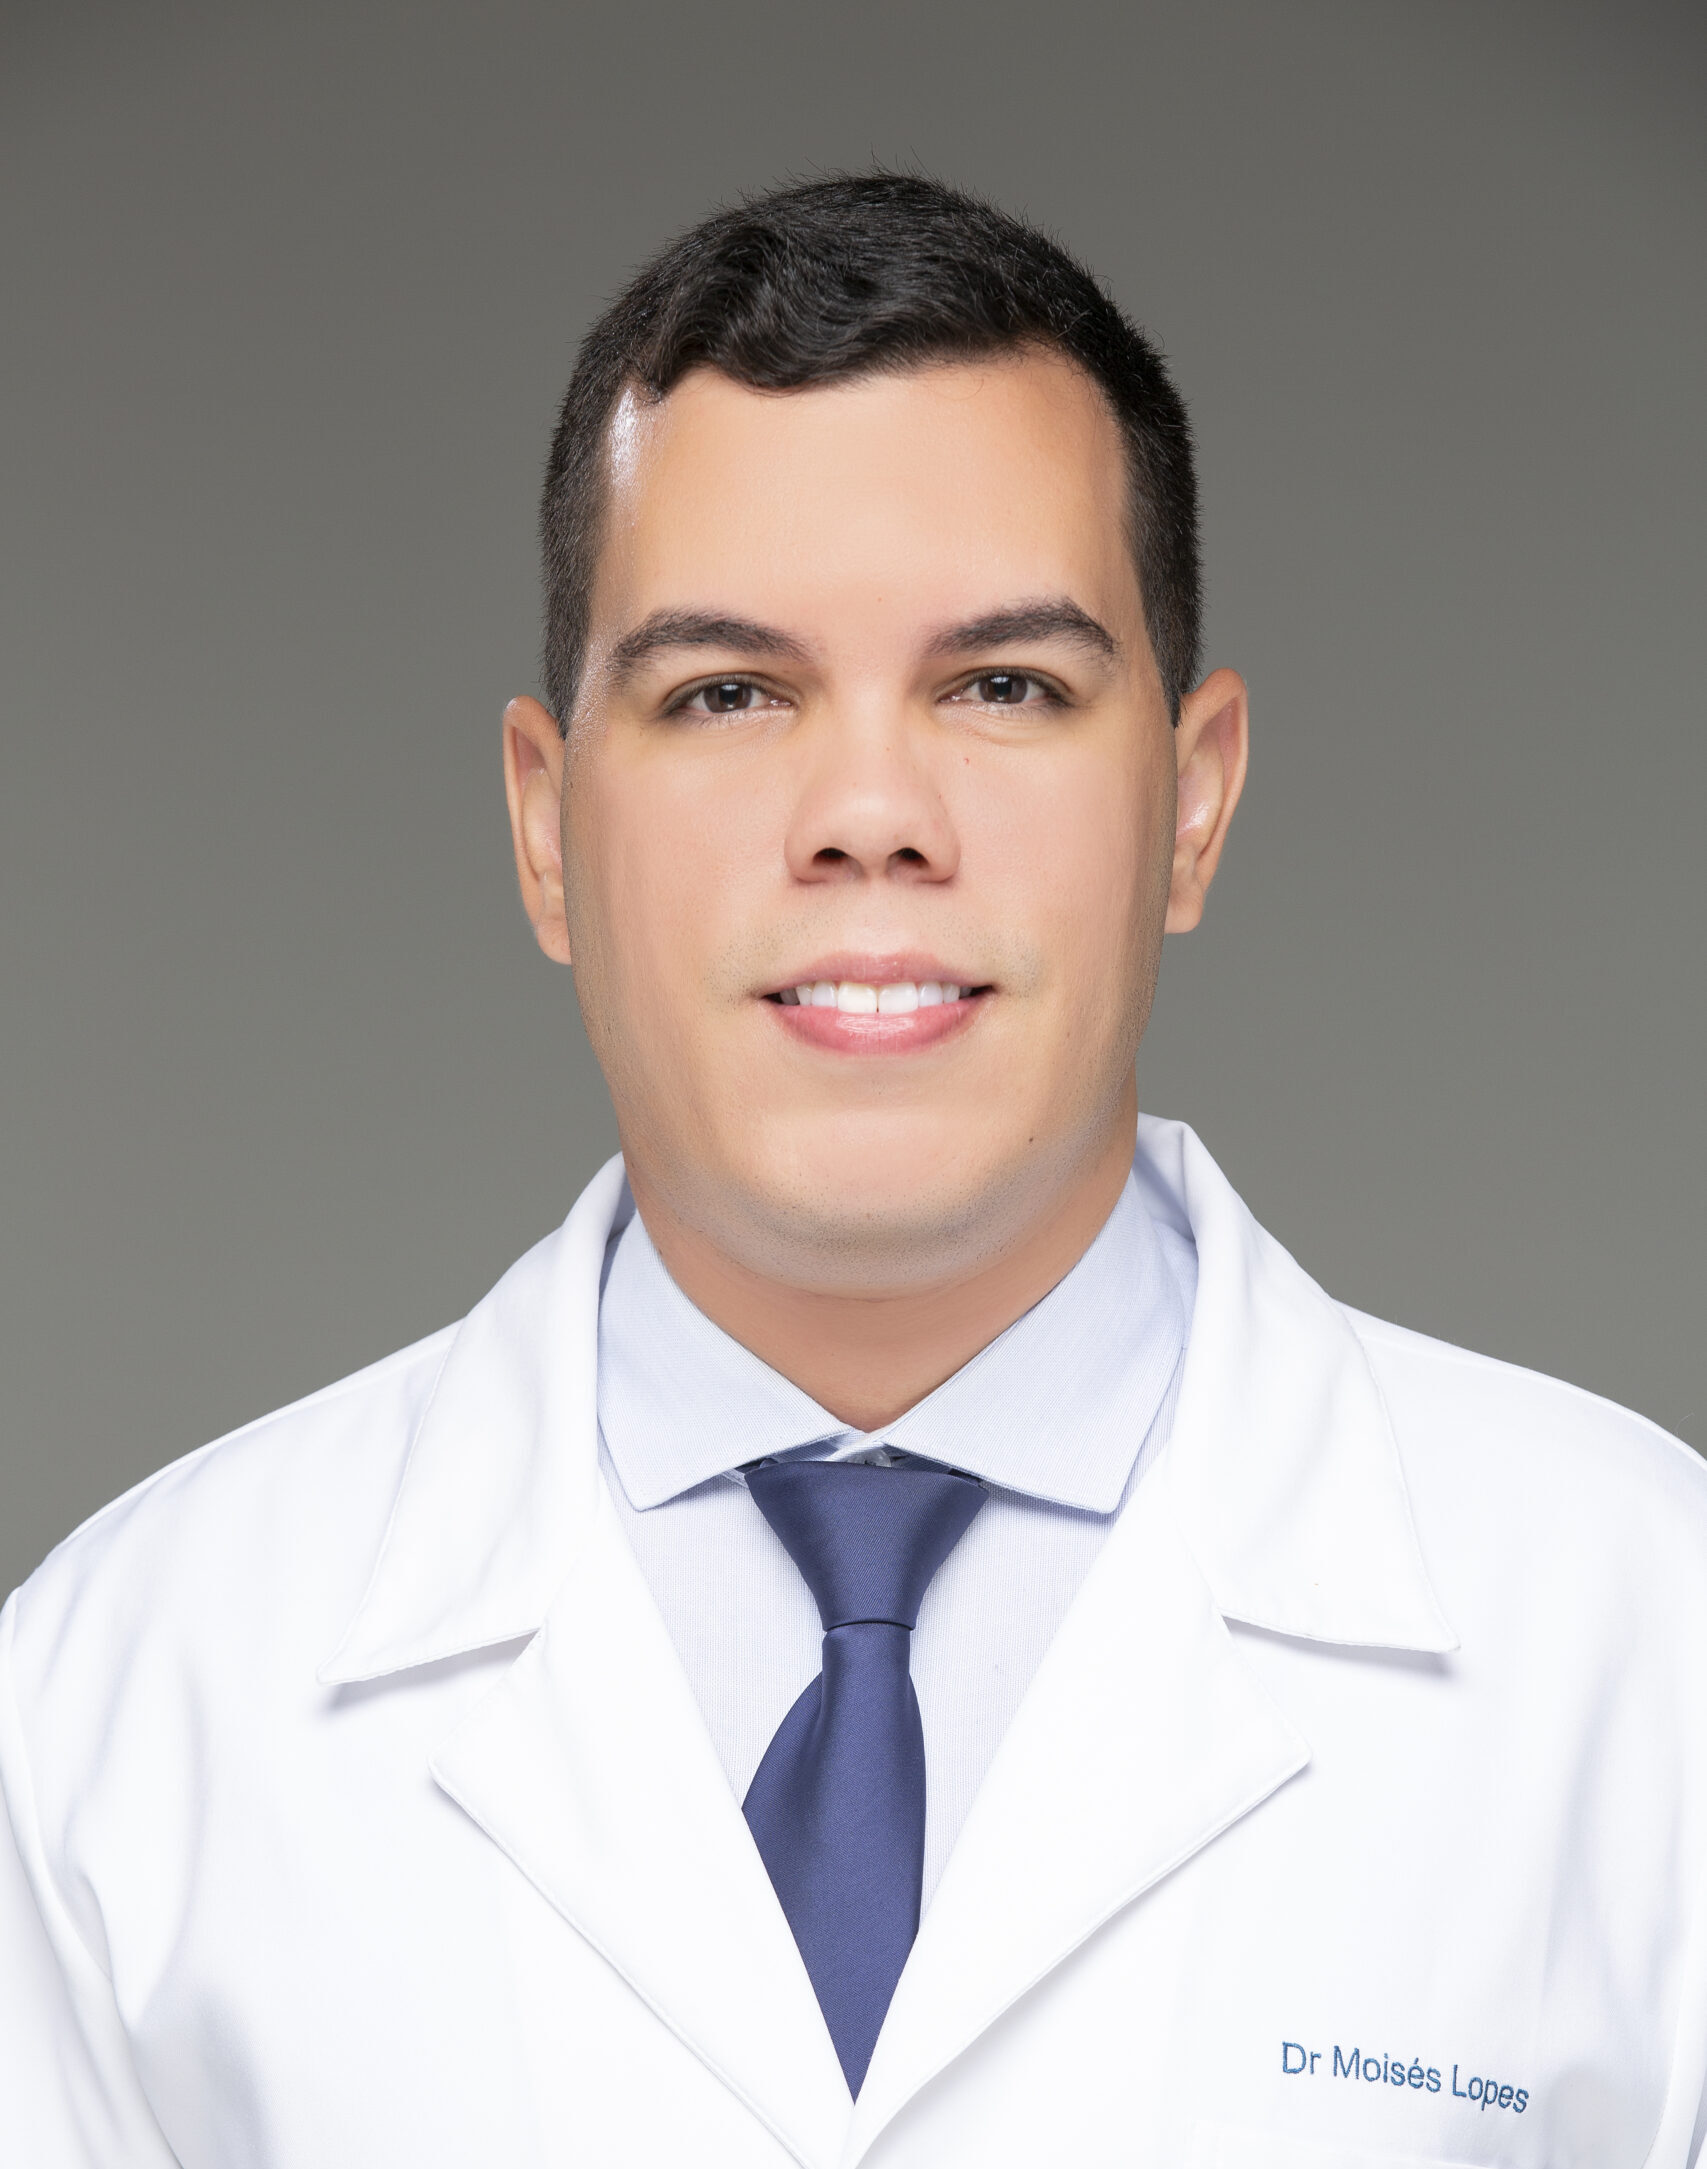 Dr. Moises de Sousa Martins Lopes